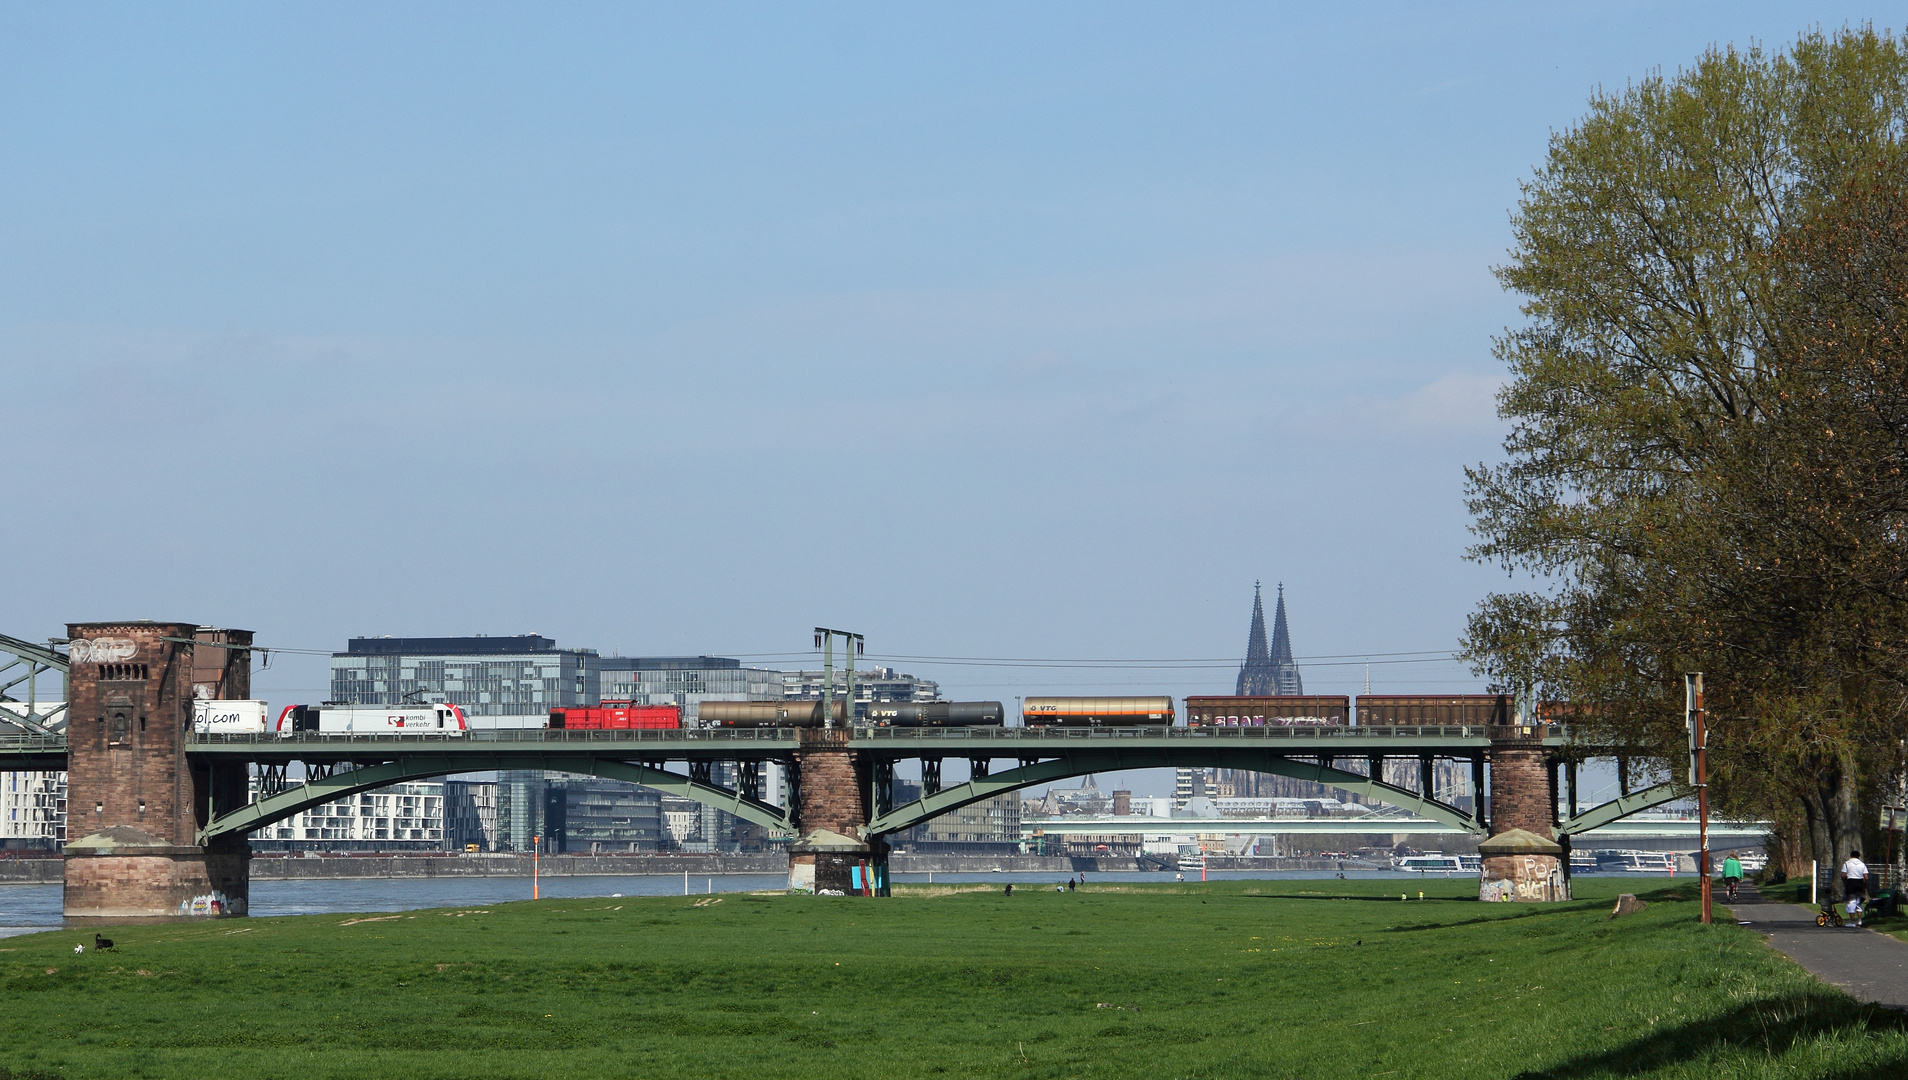 Der Triester-Ekol trifft auf Kölner Diesel